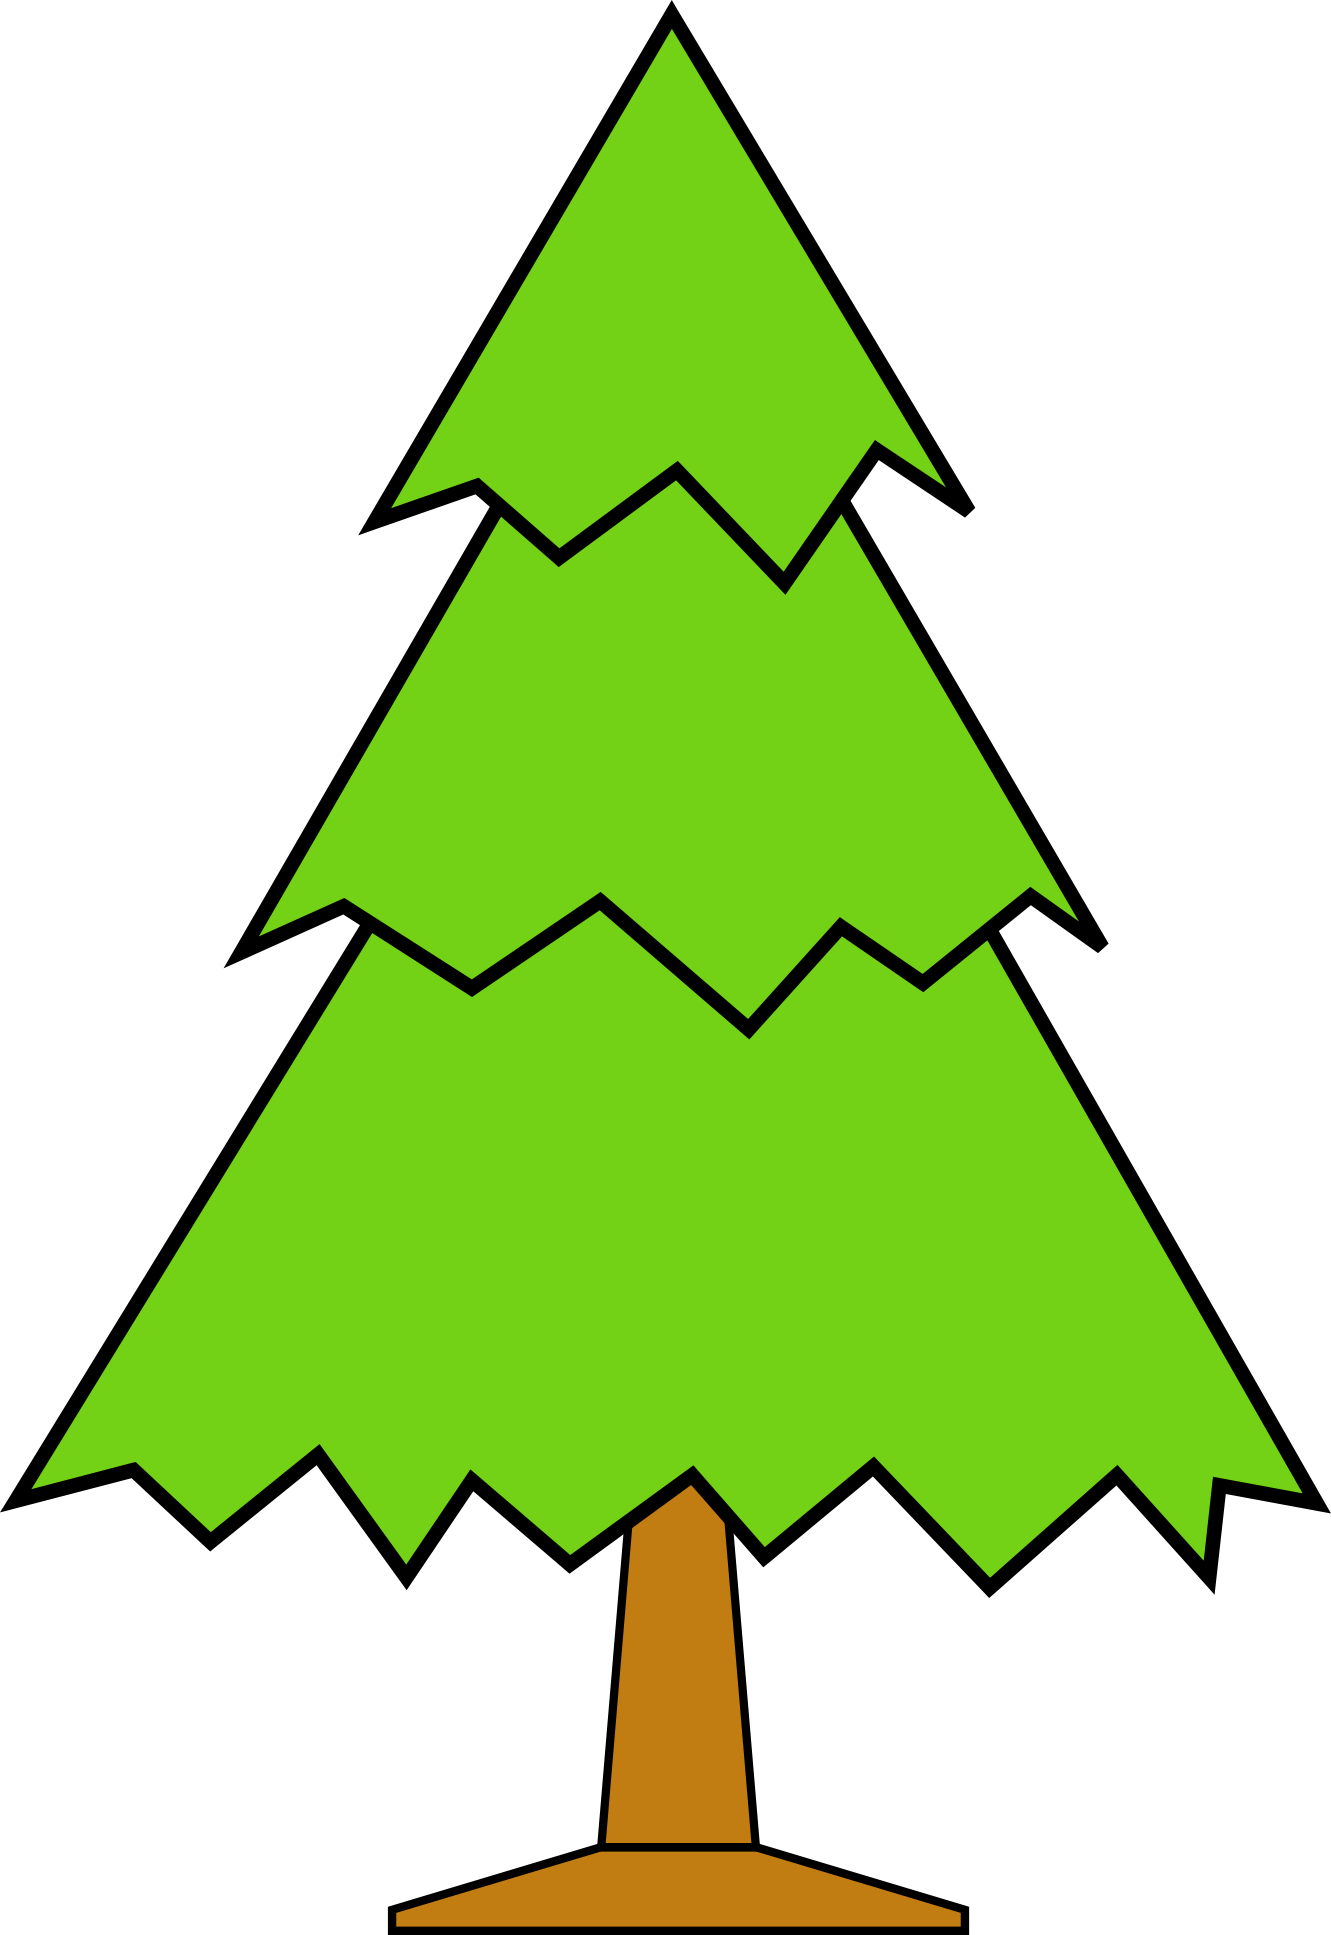 happy cute cartoon christmas tree